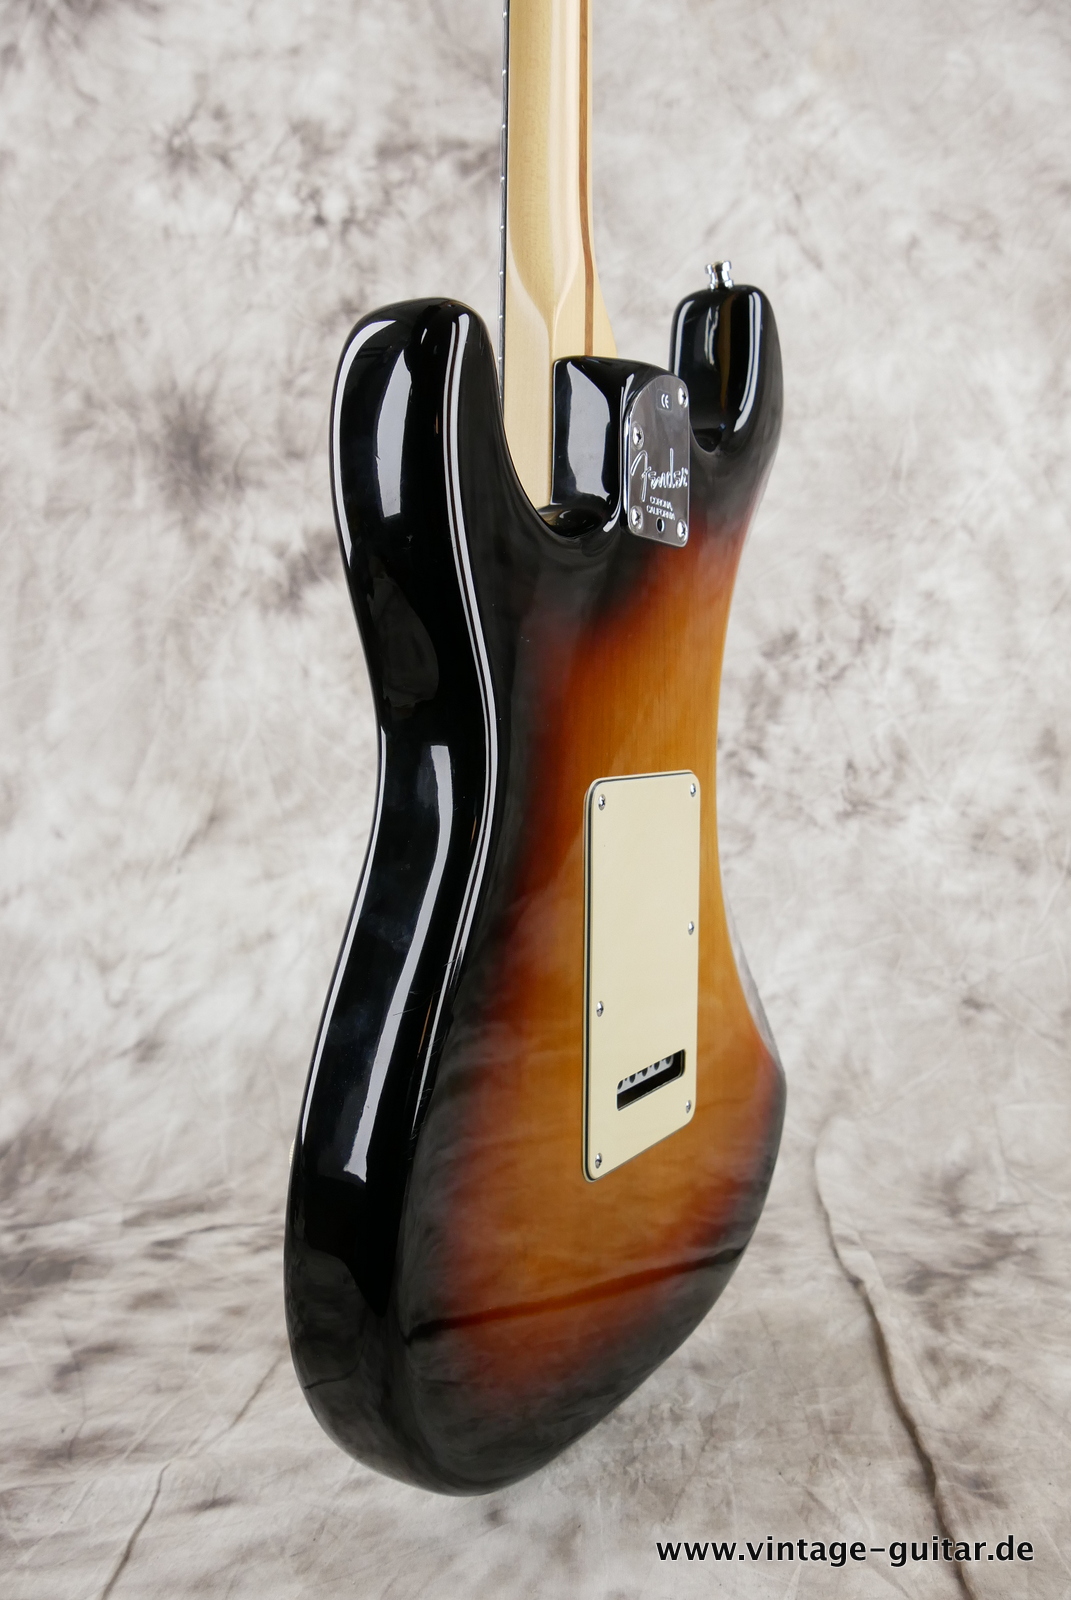 Fender_Startocaster_American_Deluxe_sunburst_samarium-cobalt-noiseless_tremolo_2005-011.JPG